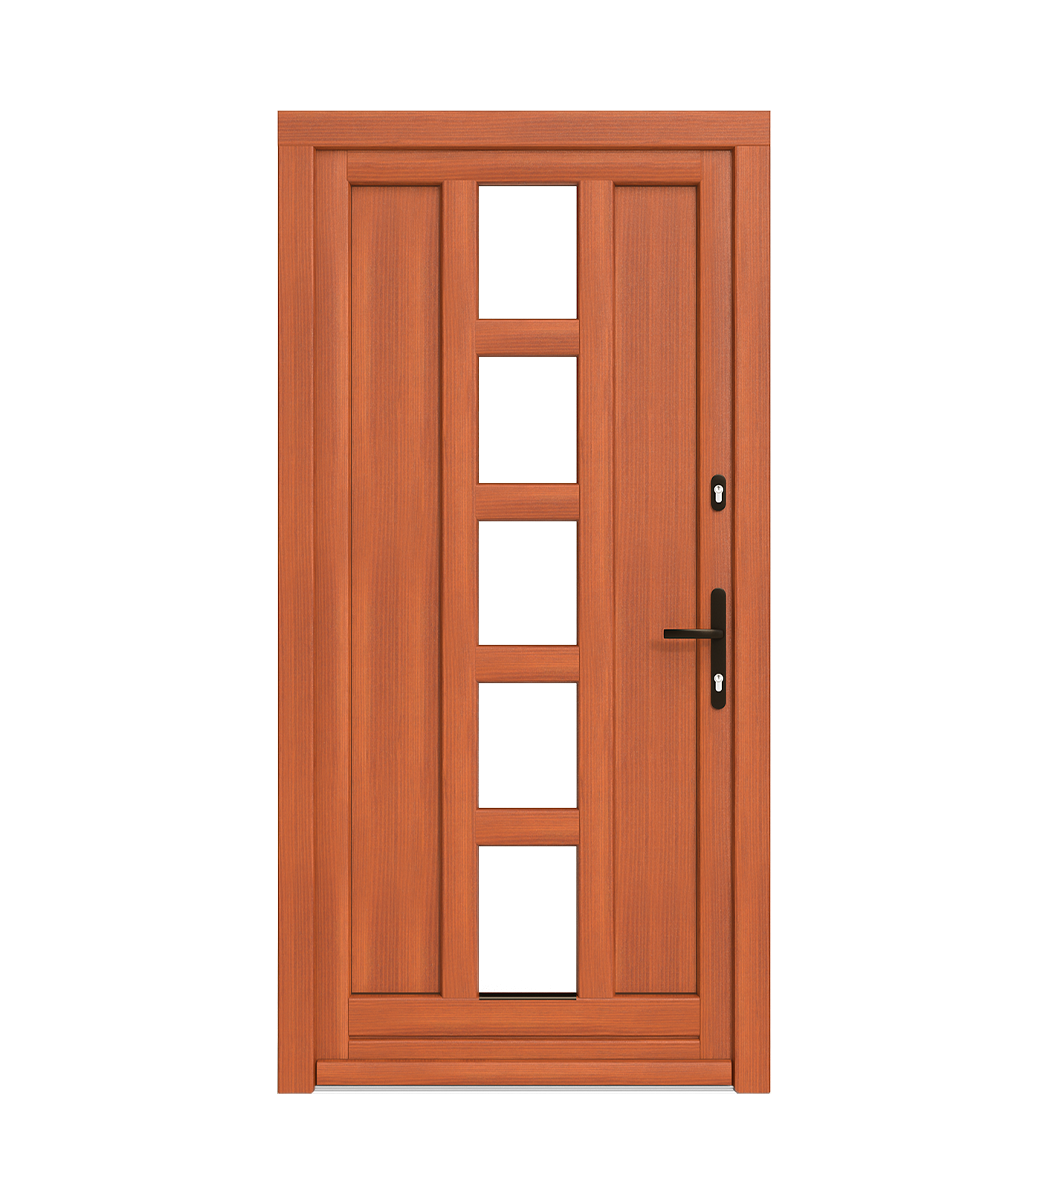 Latě v dřevěných dveřích